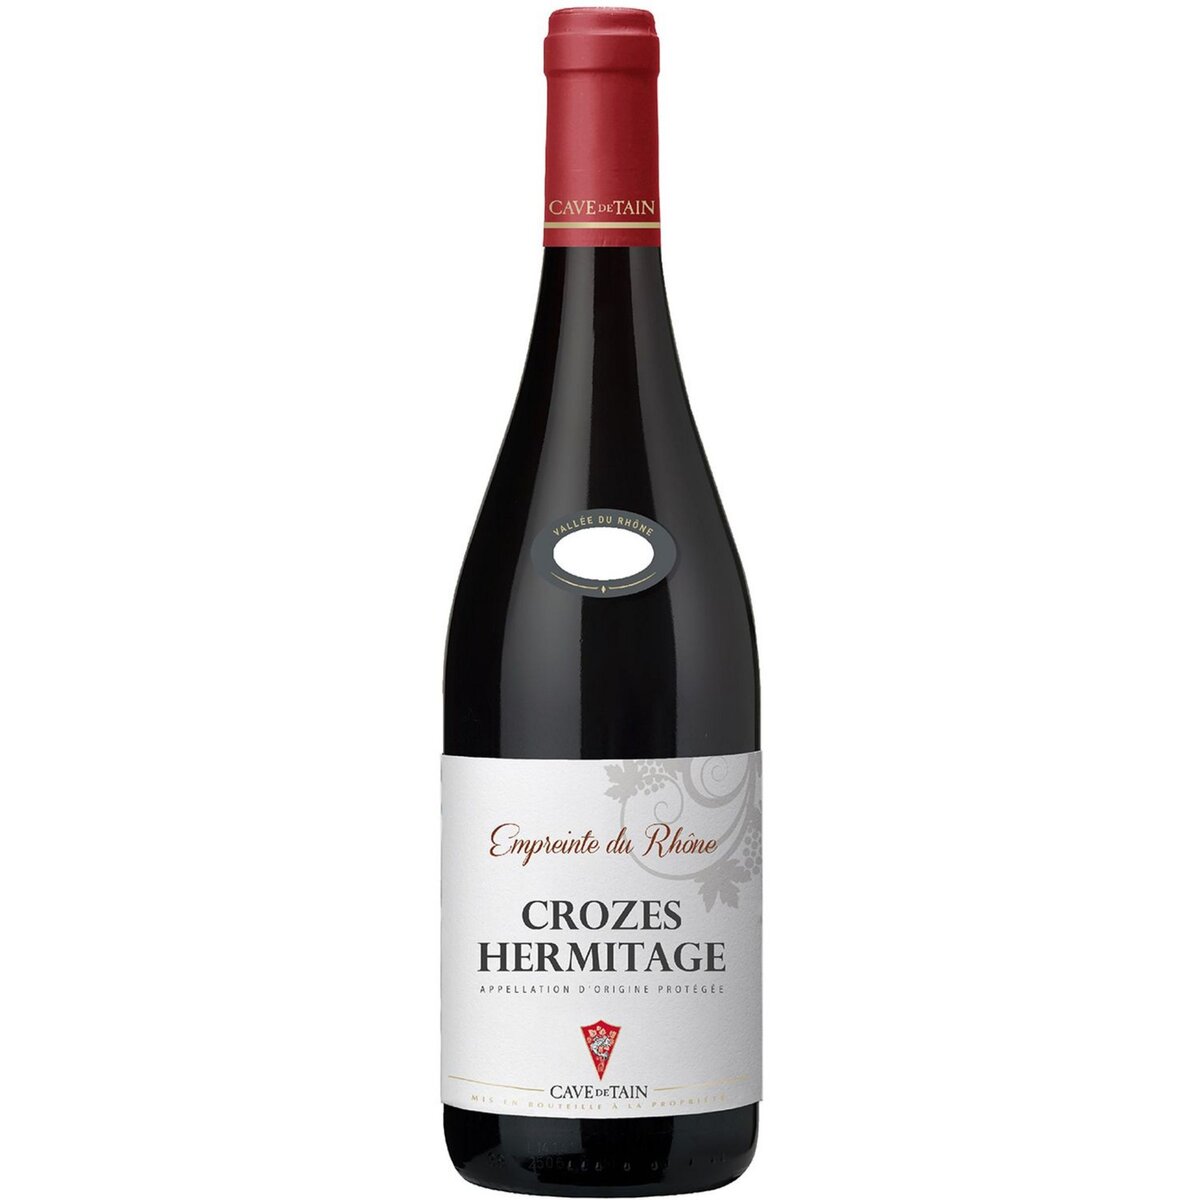 Vin rouge AOP Crozes-Hermitage Empreinte du Rhône Cave de Tain 2019 75cl